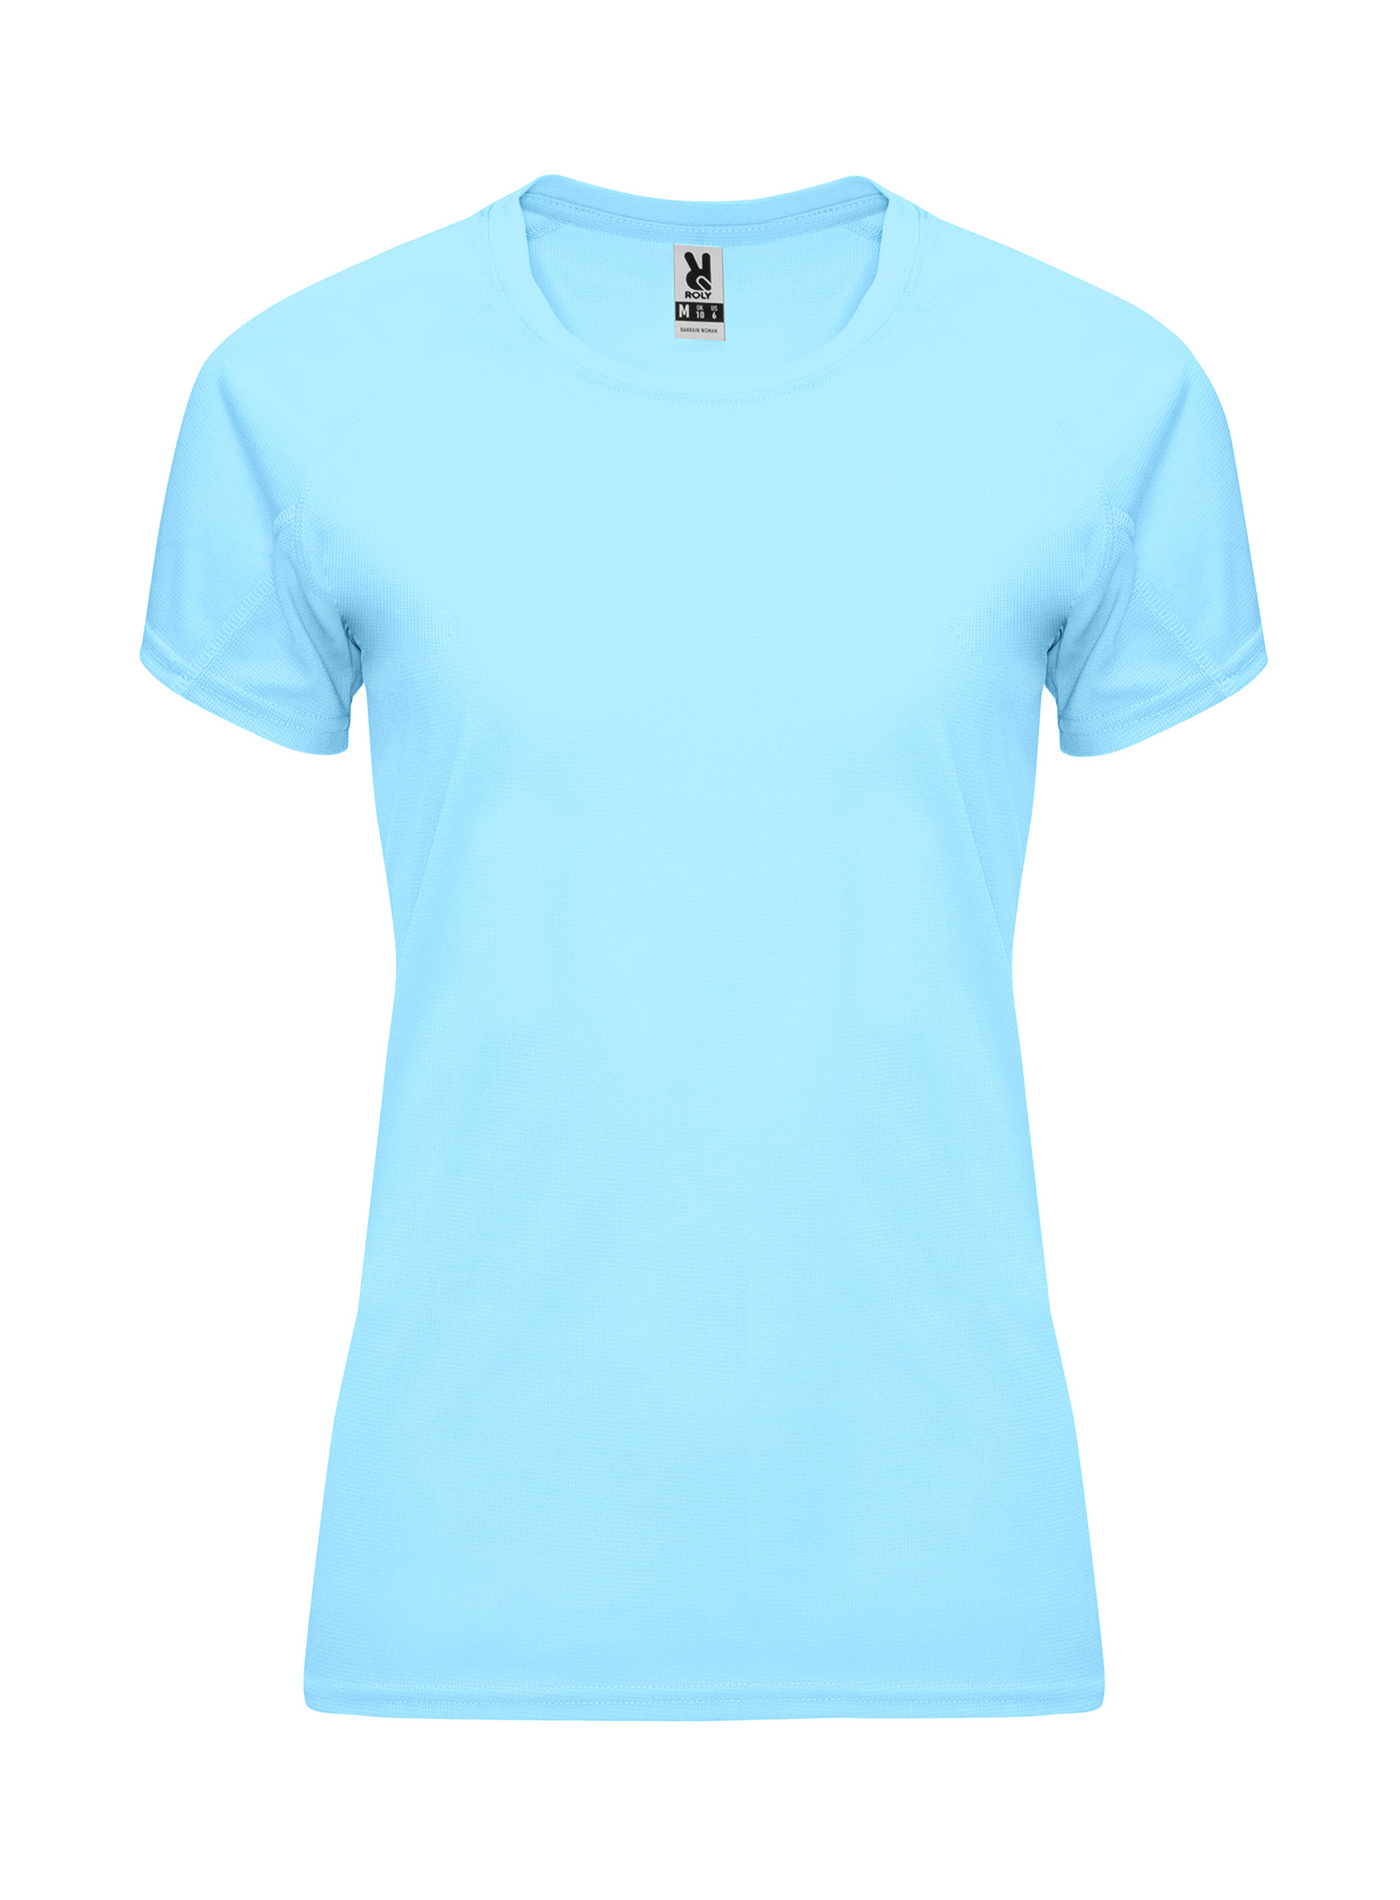 Dámské sportovní tričko Roly Bahrain - Blankytně modrá M